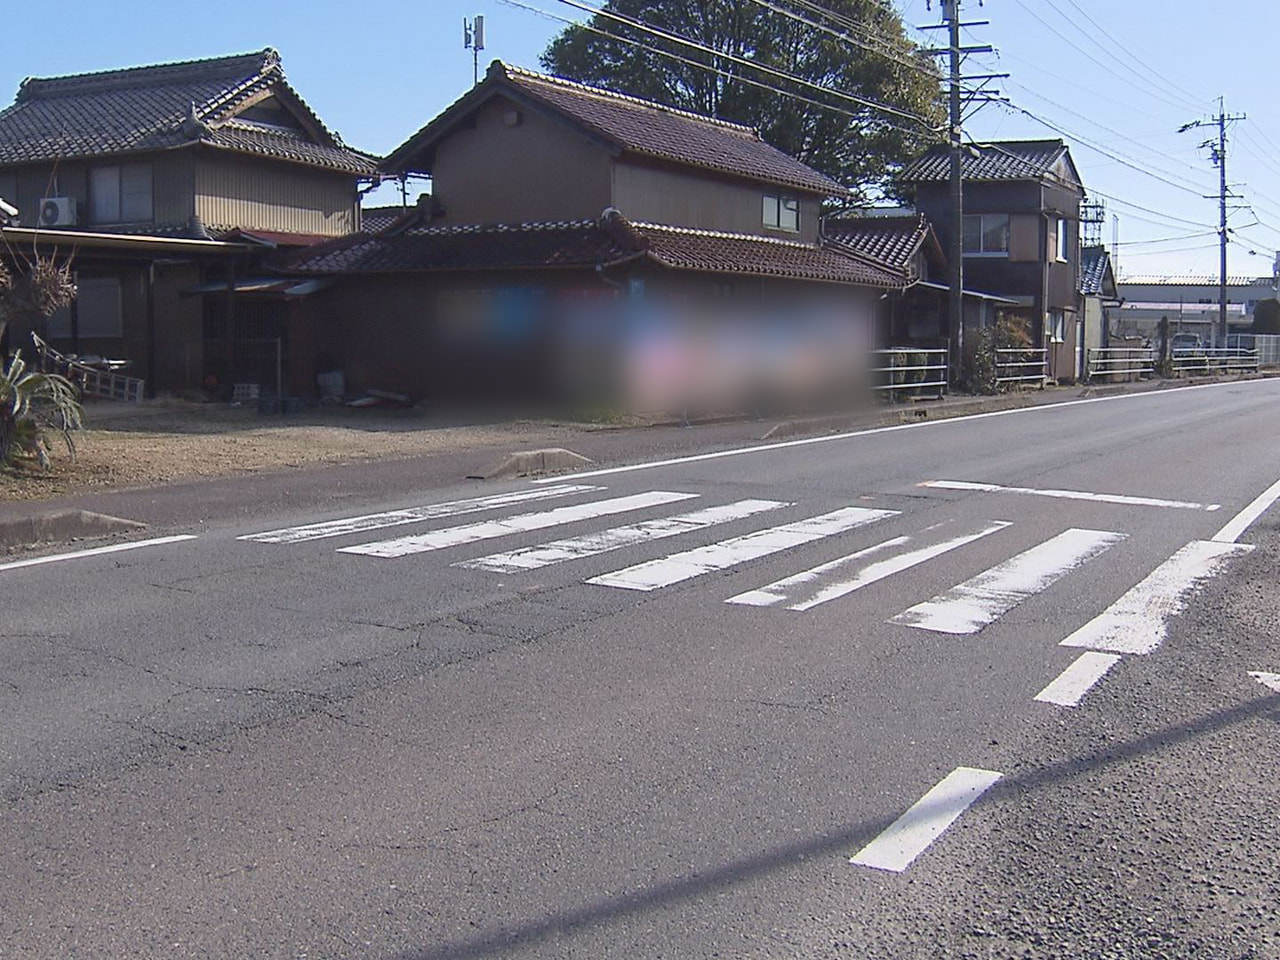 関市の県道で２日、道路を横断していた８８歳の女性が軽乗用車にはねられ死亡しました...